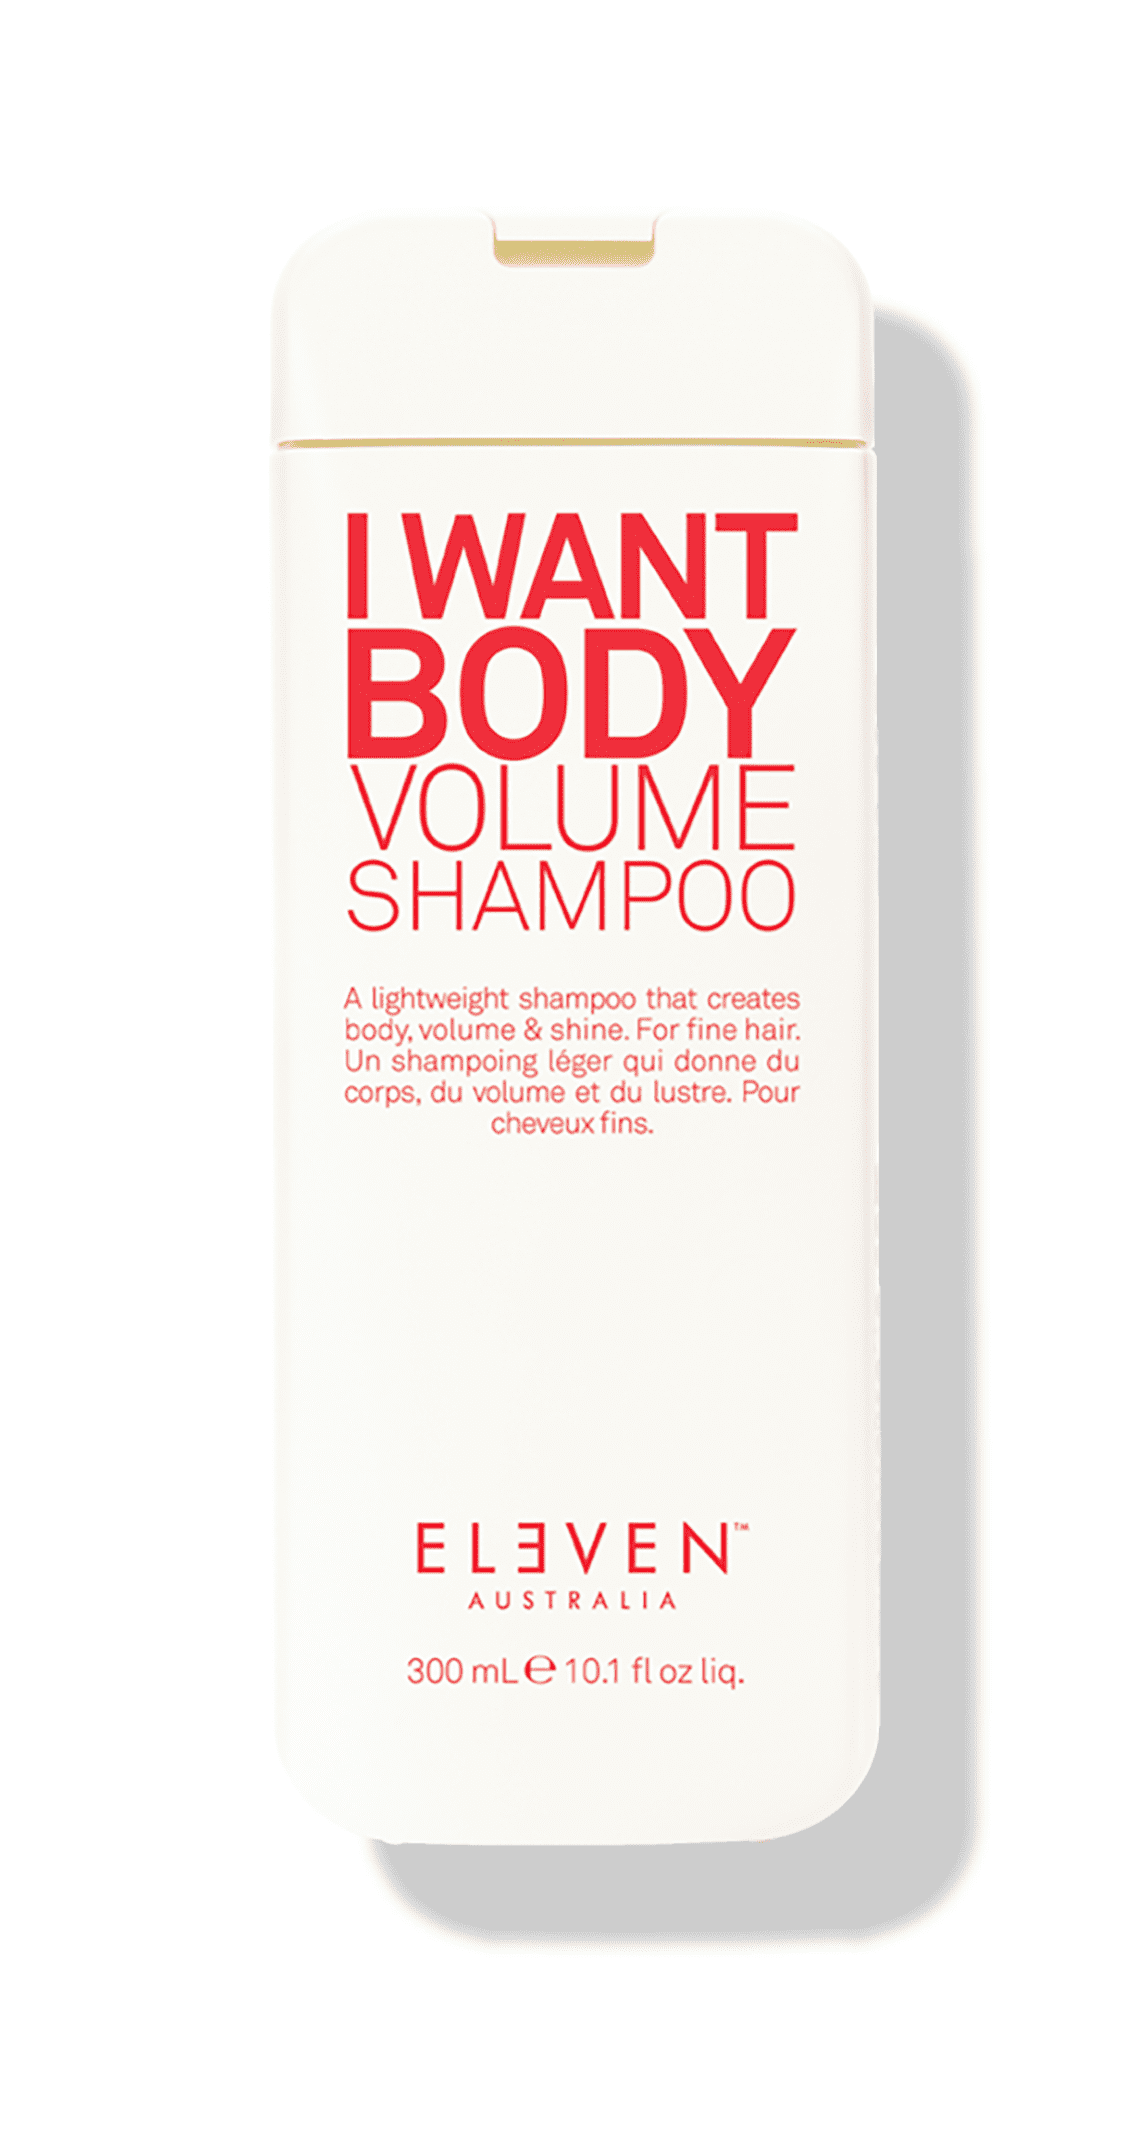 I Want Volume Shampoo - ELEVEN Australia